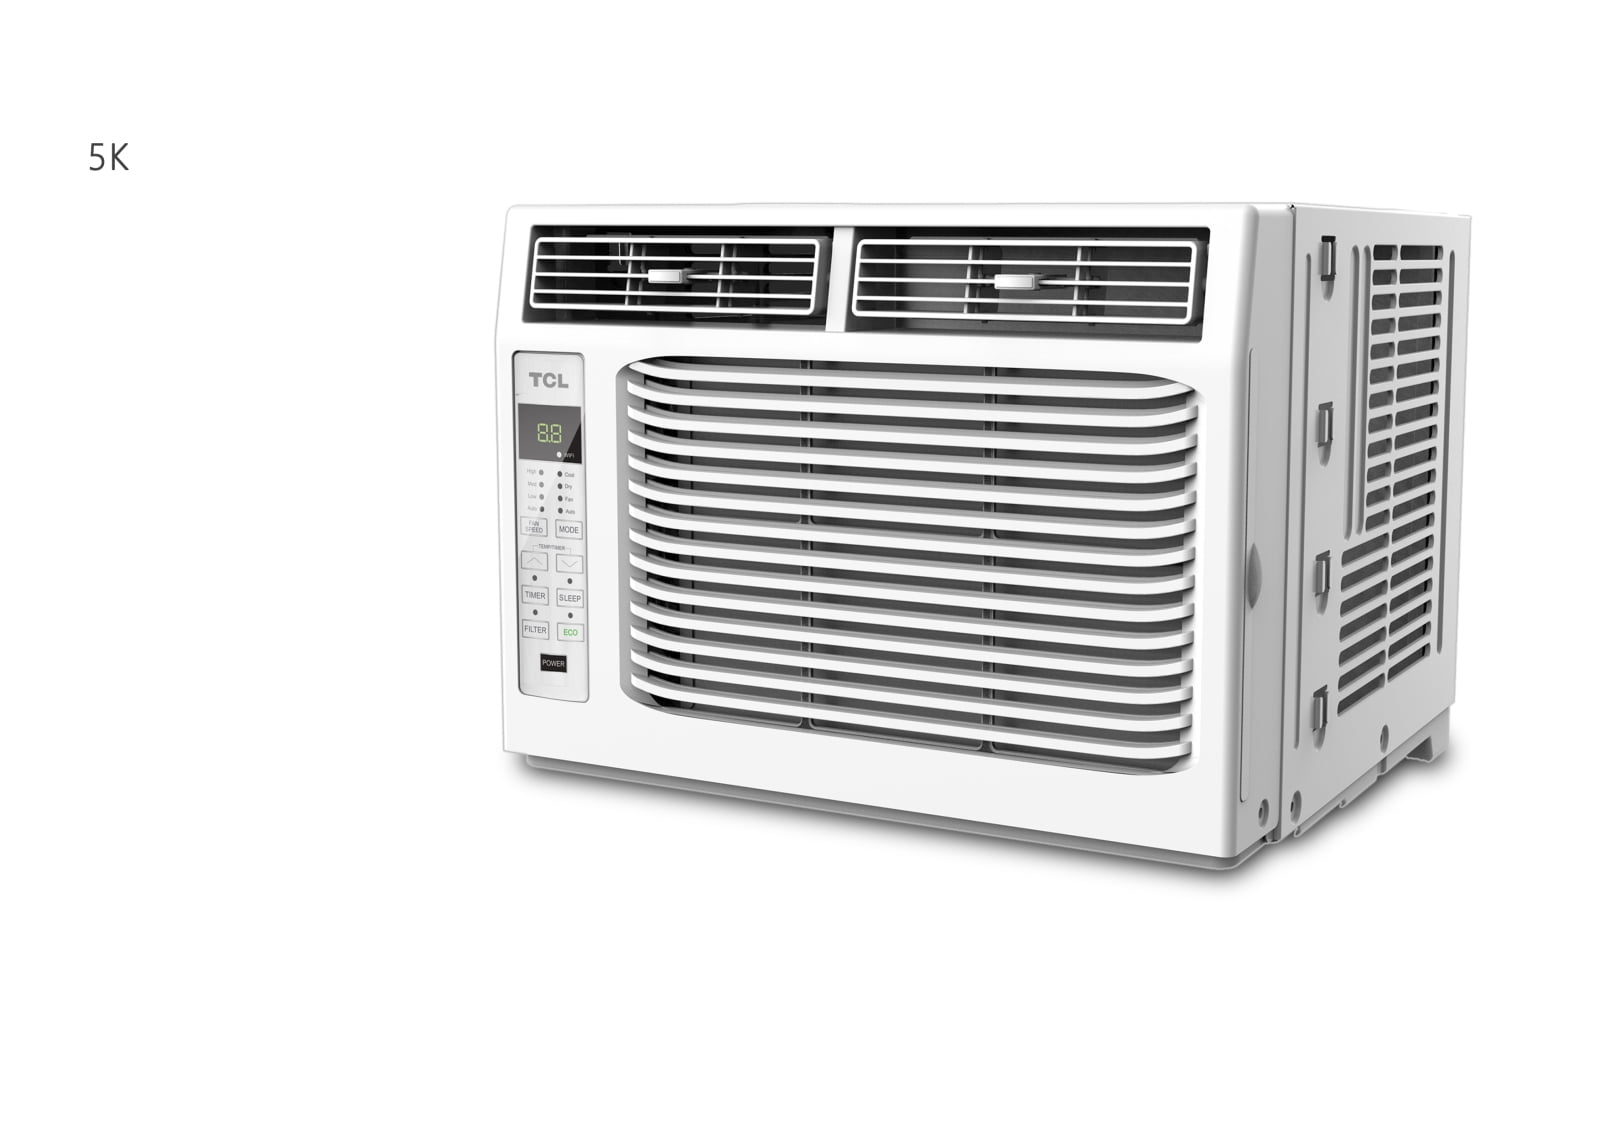 5000 btu air conditioner square footage